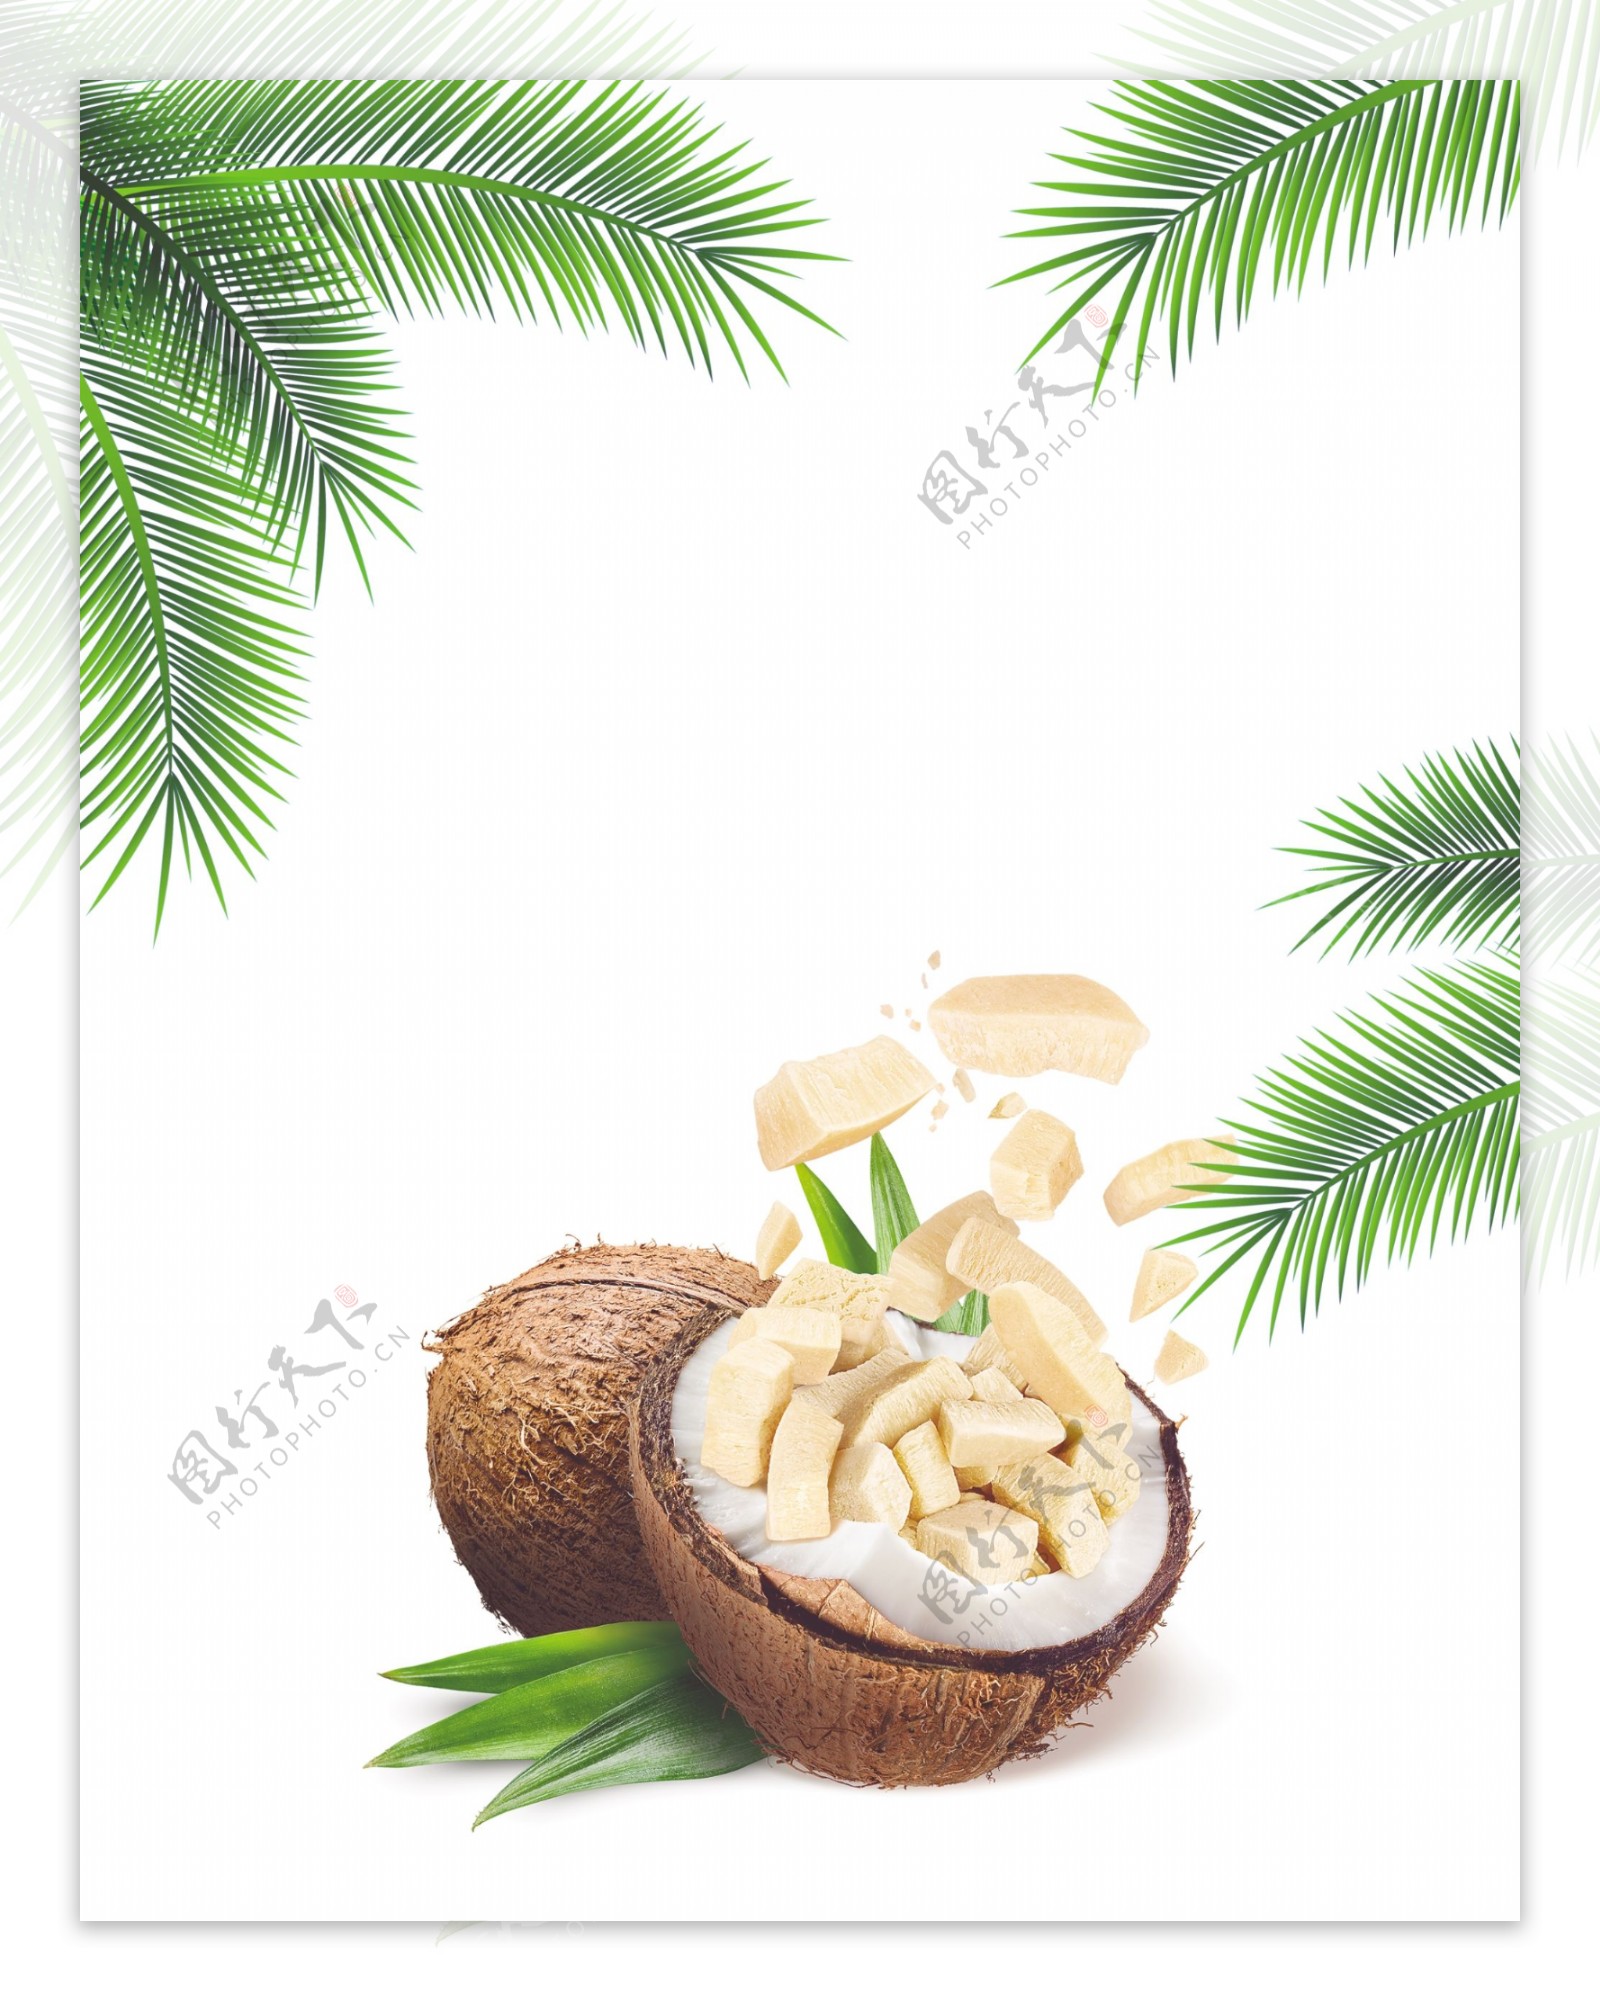 椰子块与椰子树